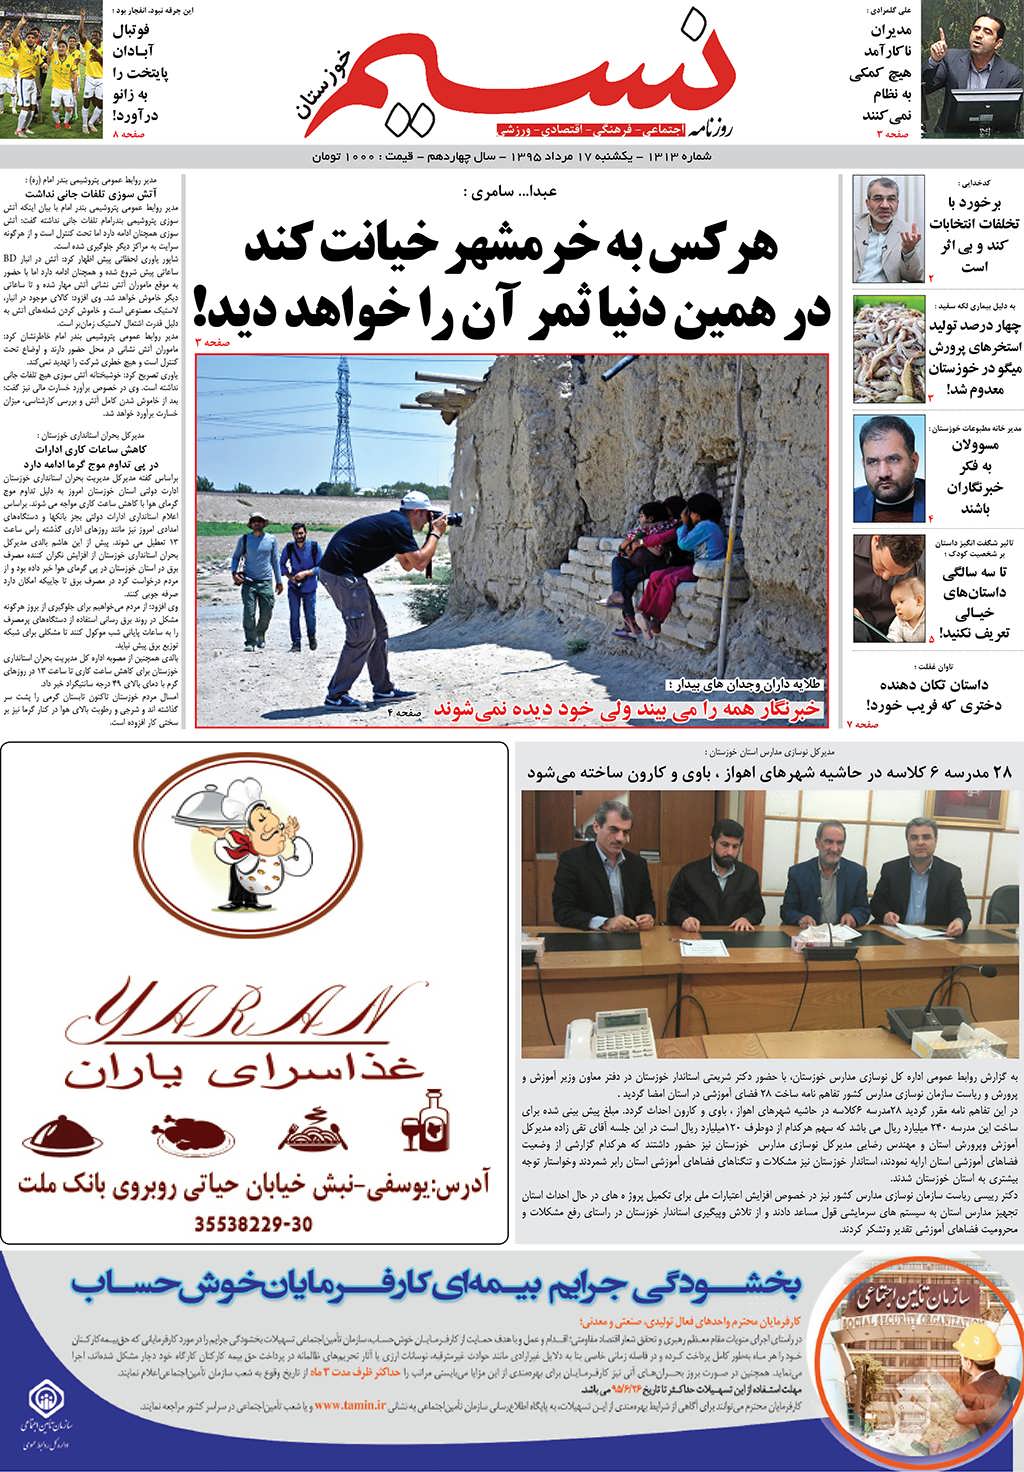 صفحه اصلی روزنامه نسیم شماره 1313